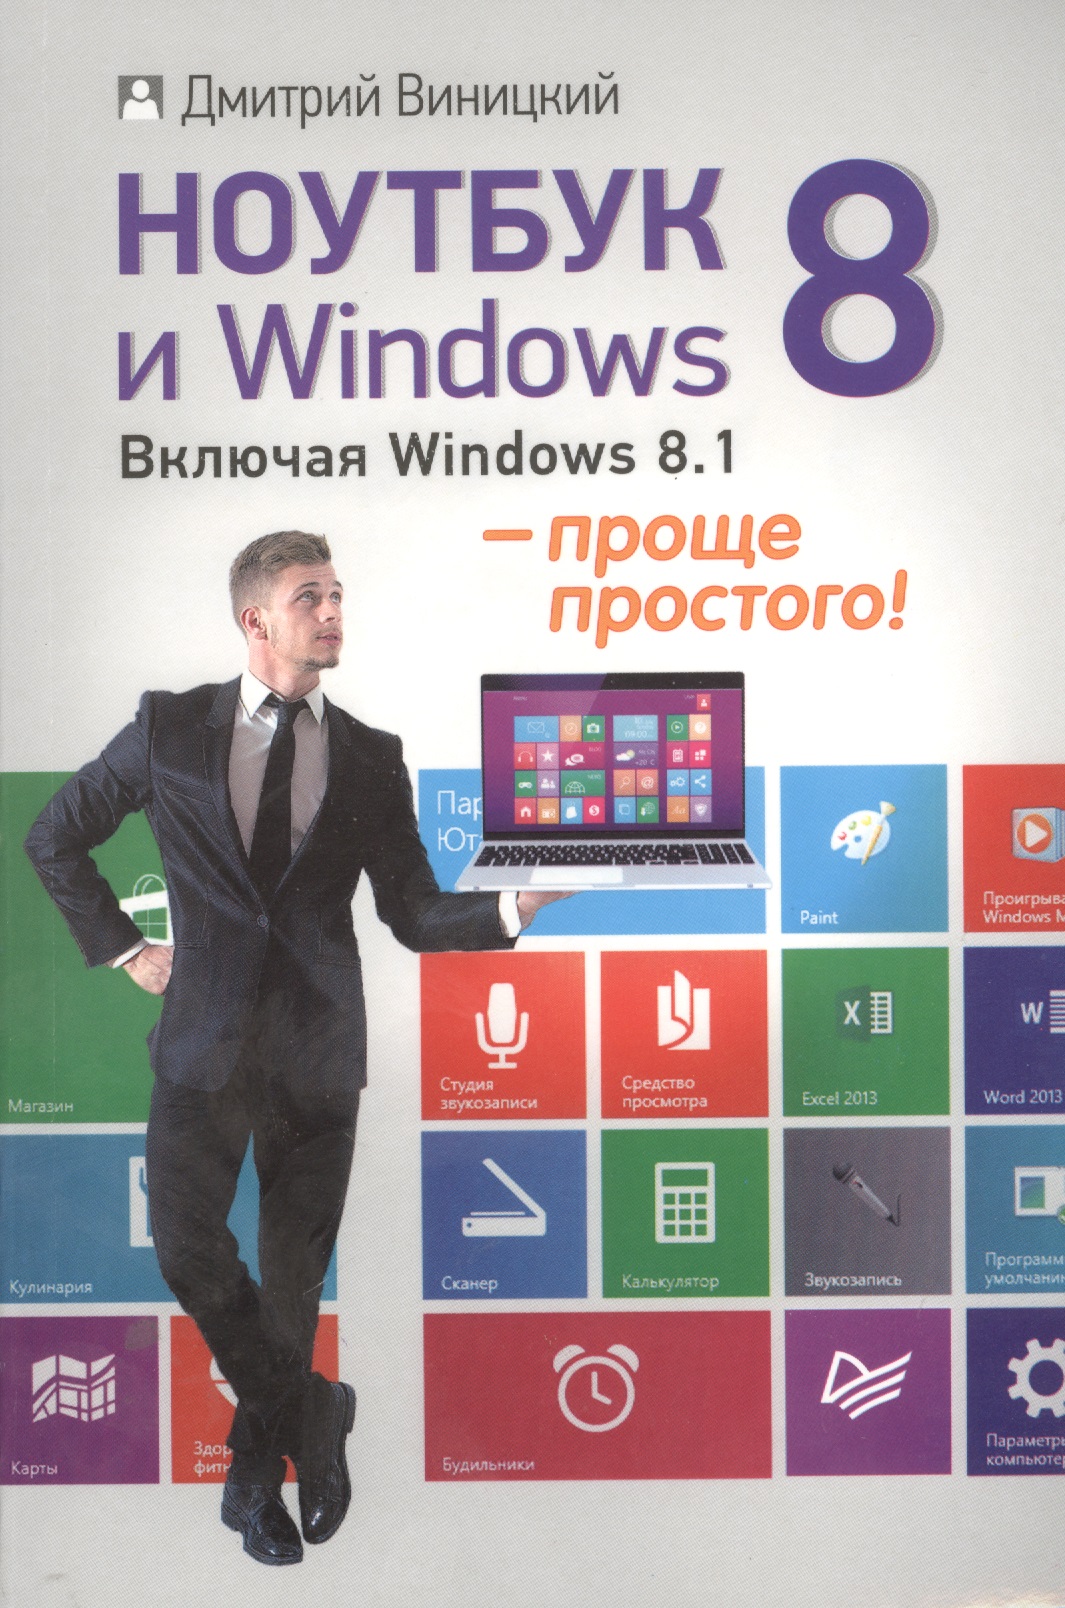 Виницкий Дмитрий Мирославович Ноутбук и Windows 8 - проще простого!